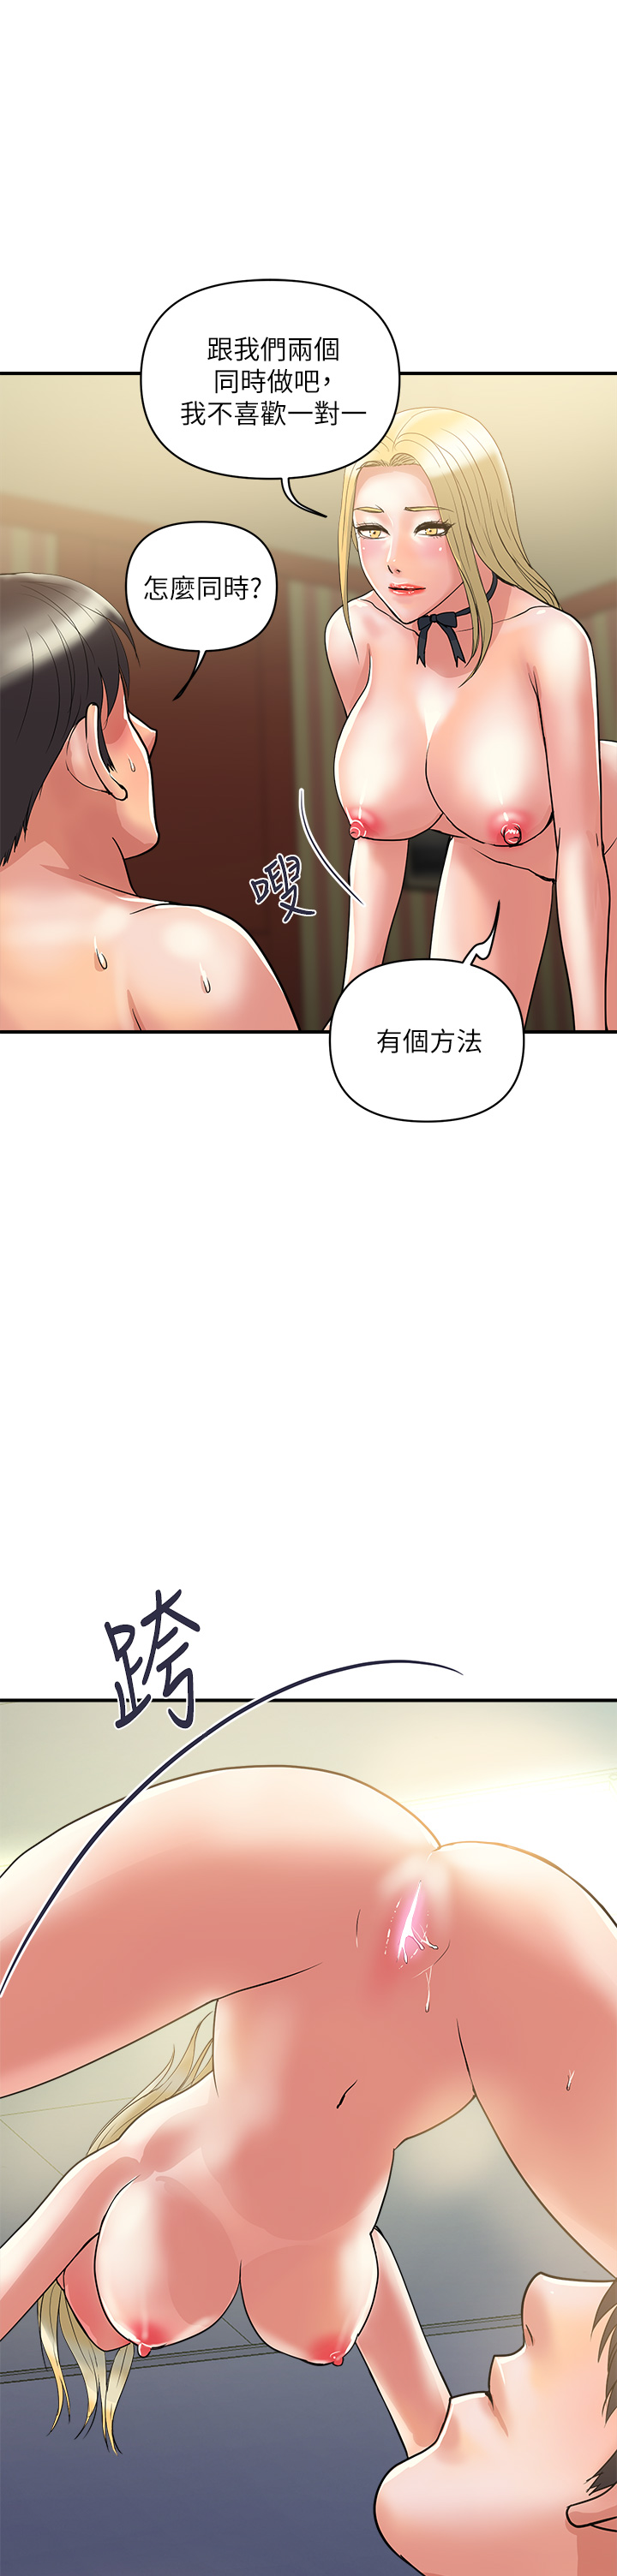 韩国污漫画 行走費洛蒙 第55话最终话不使用香水的疯狂性爱趴 9